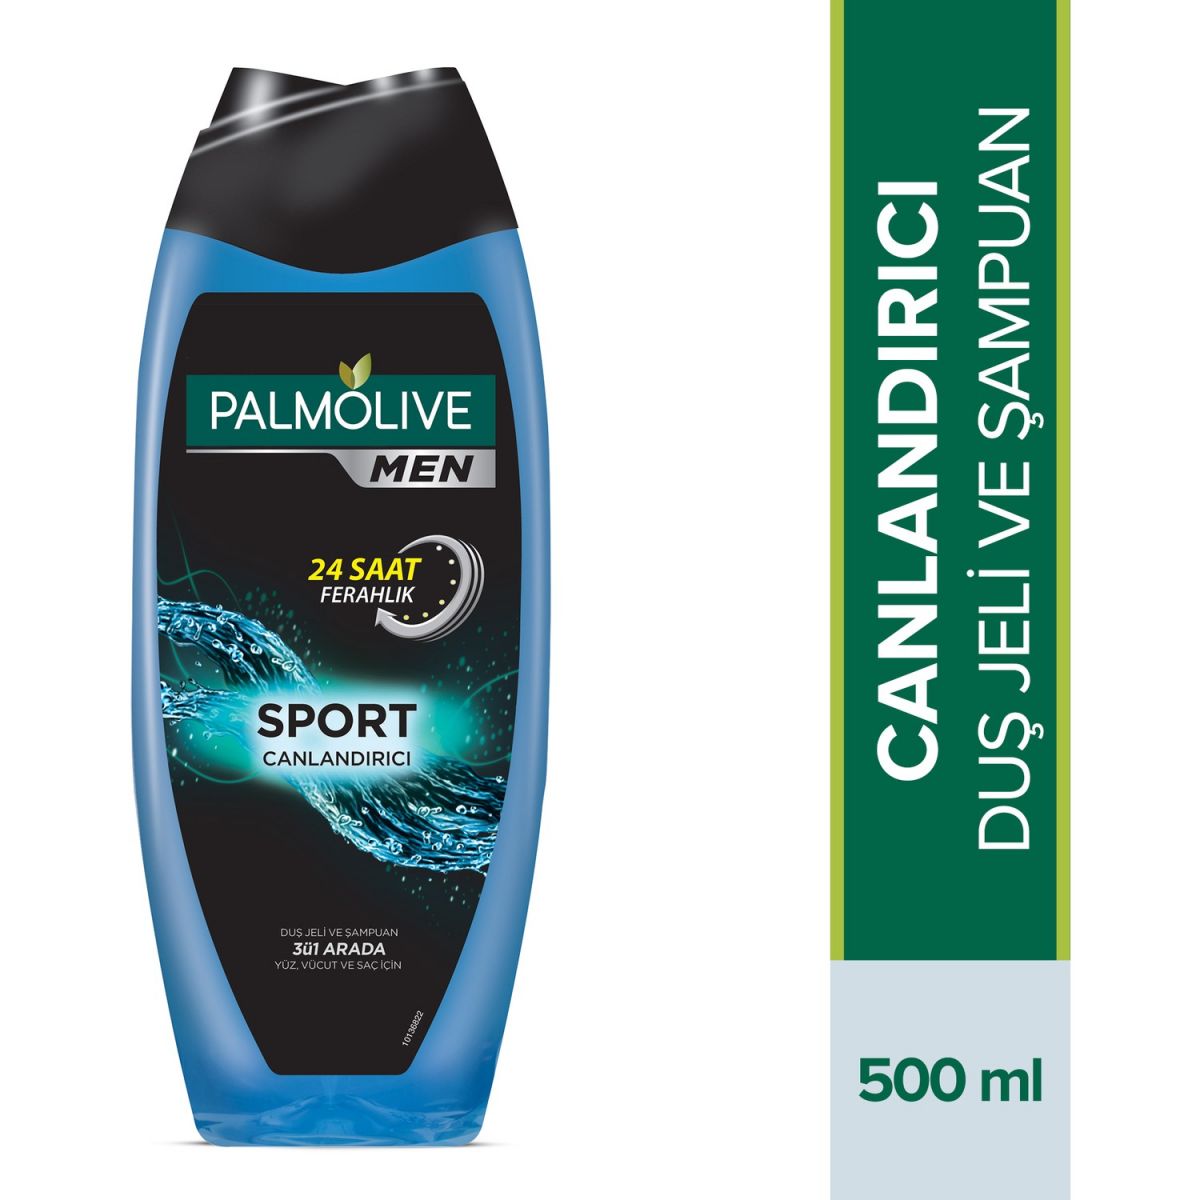 Palmolive Men Sport  4ü1  Arada Canlandırıcı Erkek Duş Jeli 500 ml